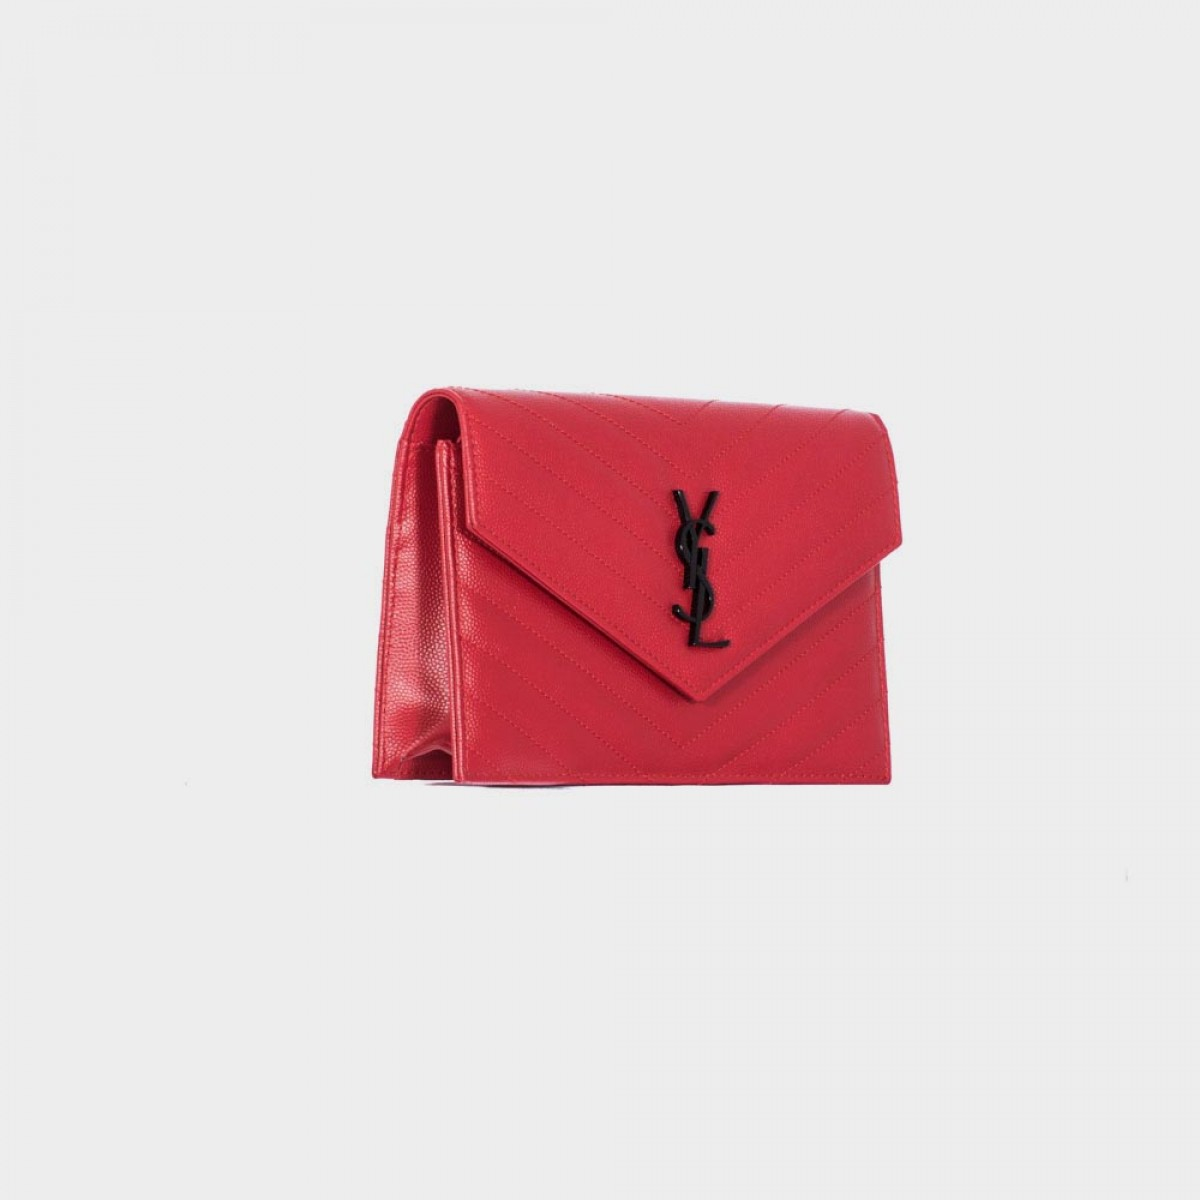 ysl handbag - monogram saint laurent chain wallet in red crocodile embossed leather